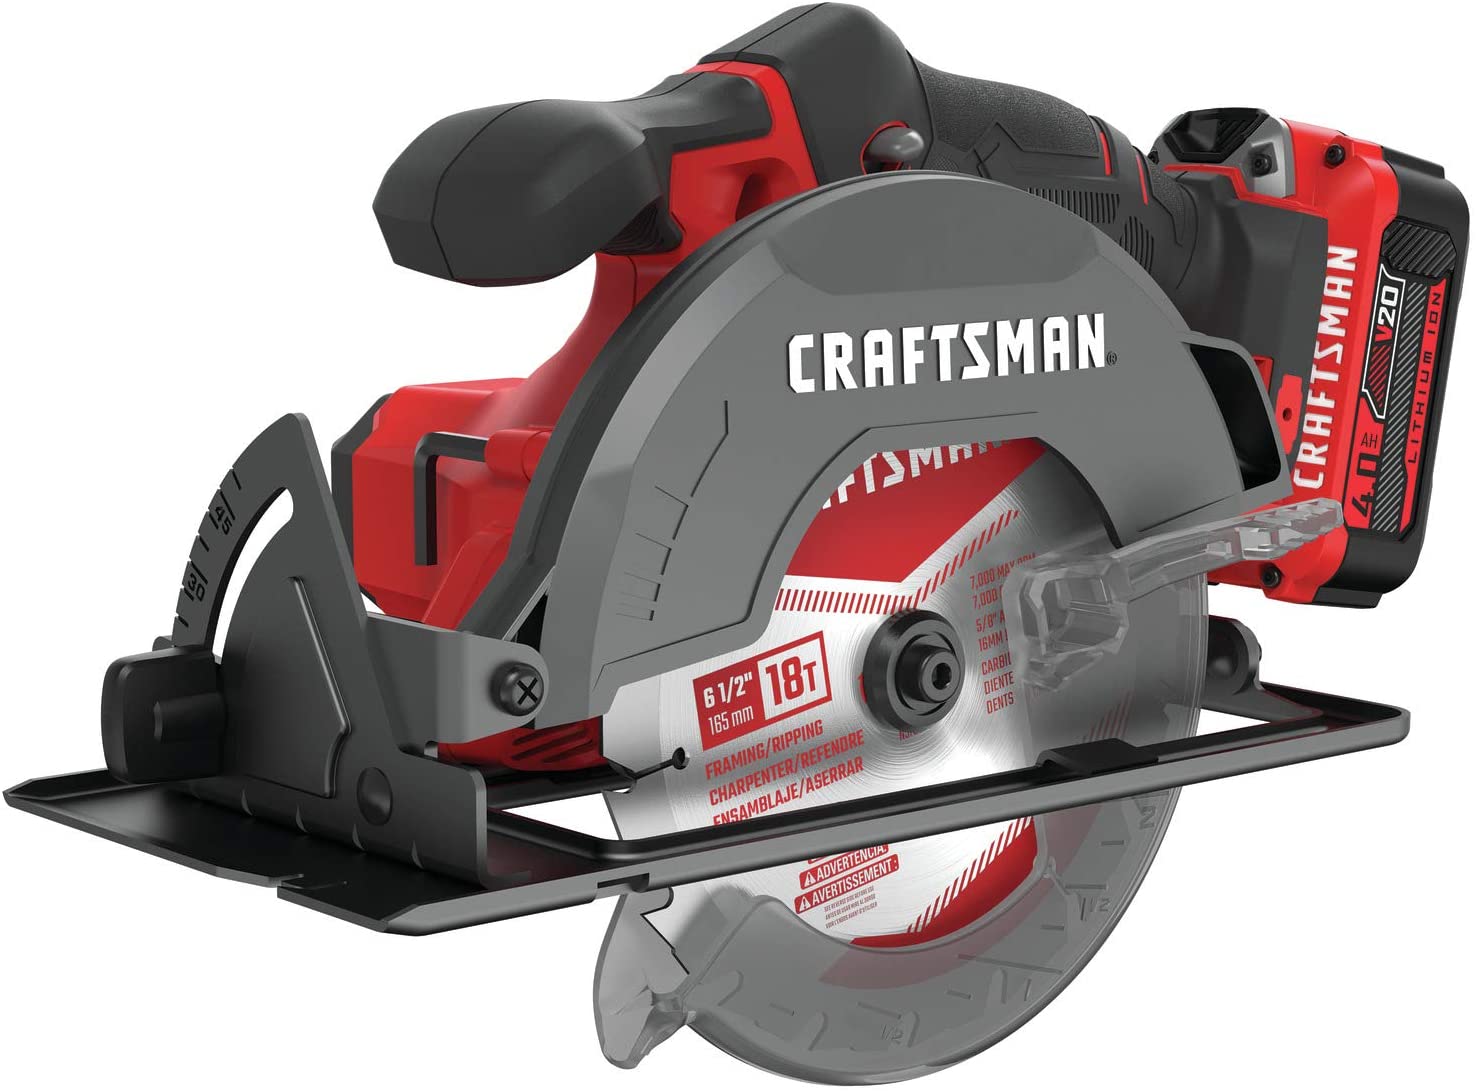 CRAFTSMAN CMCS500M1 Fast Cutting Beveling Circular Saw Kit, 6.5-Inch